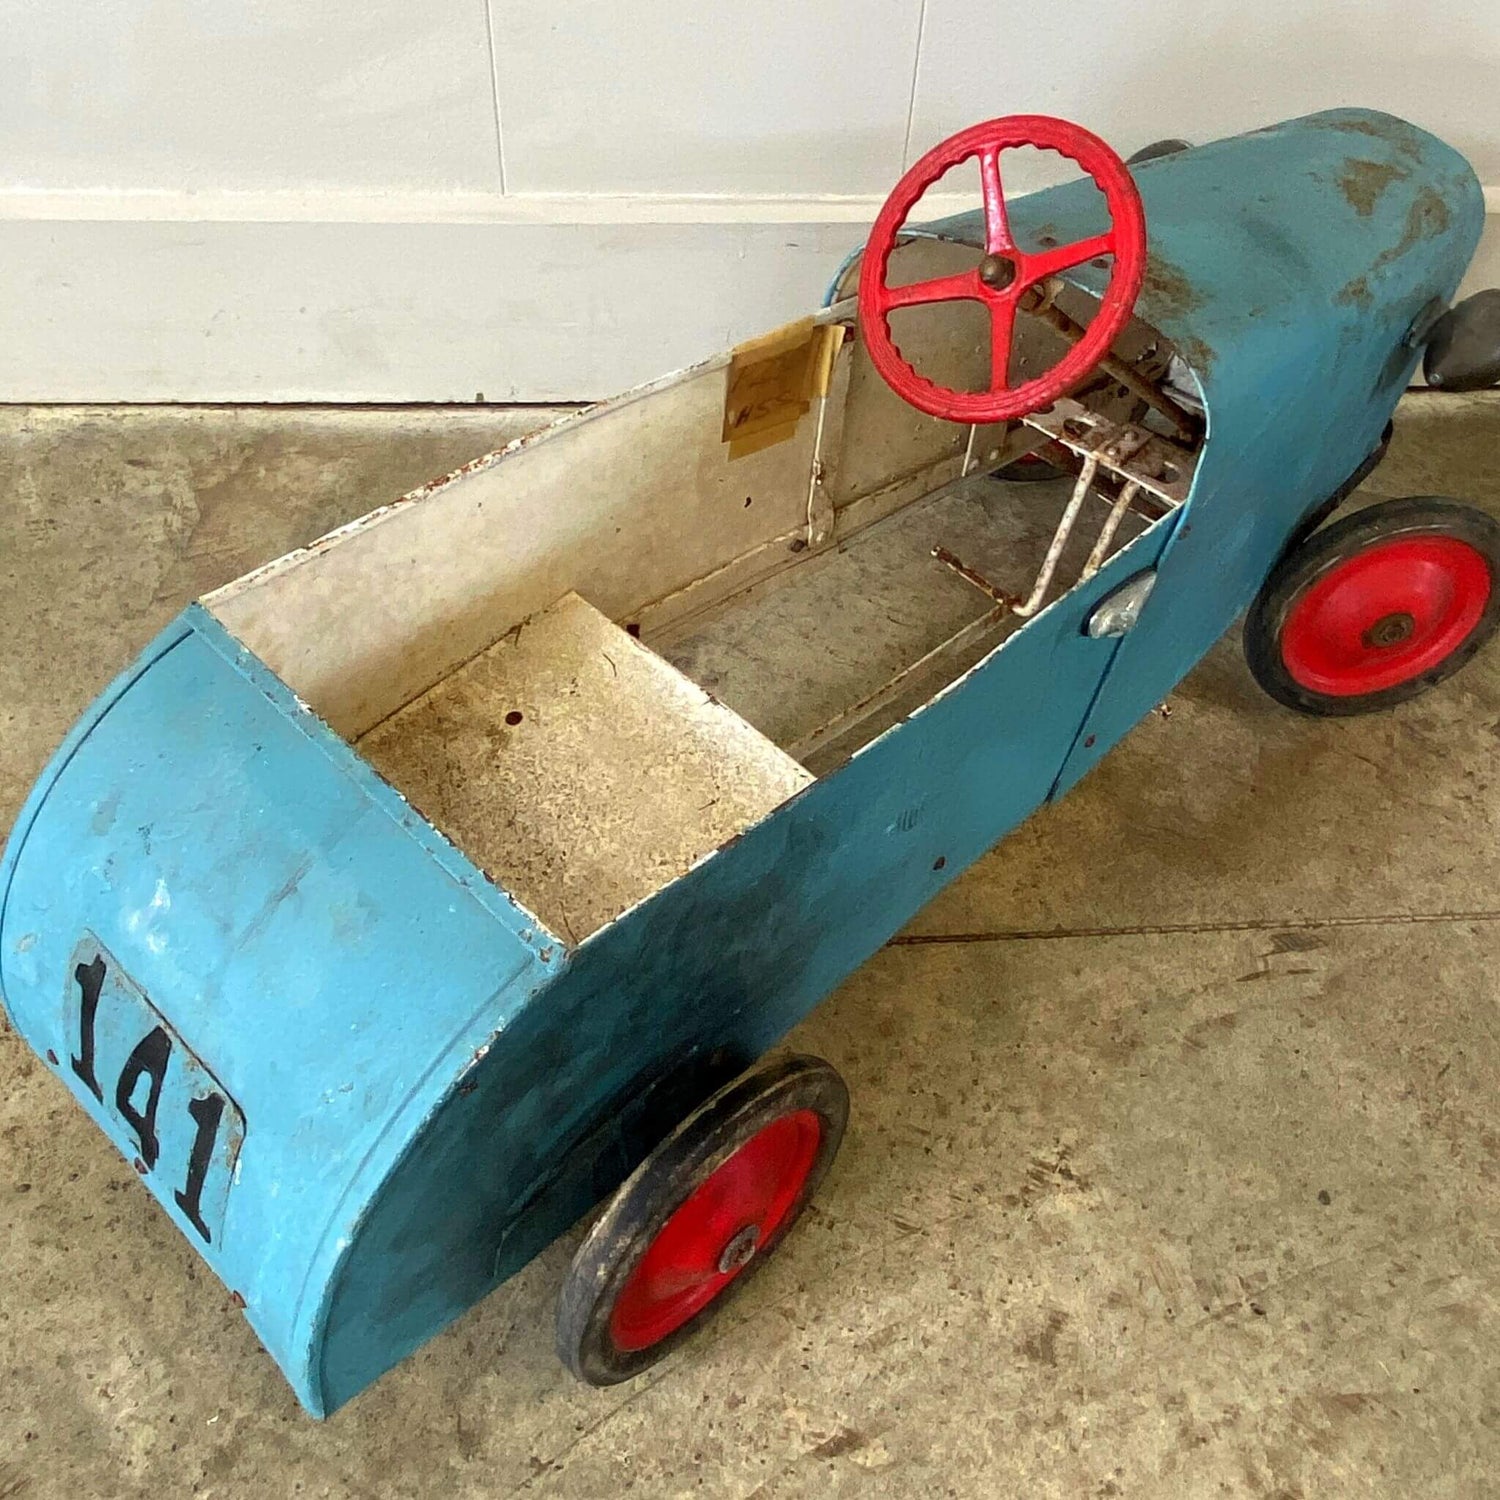 A Vintage Pedal Car